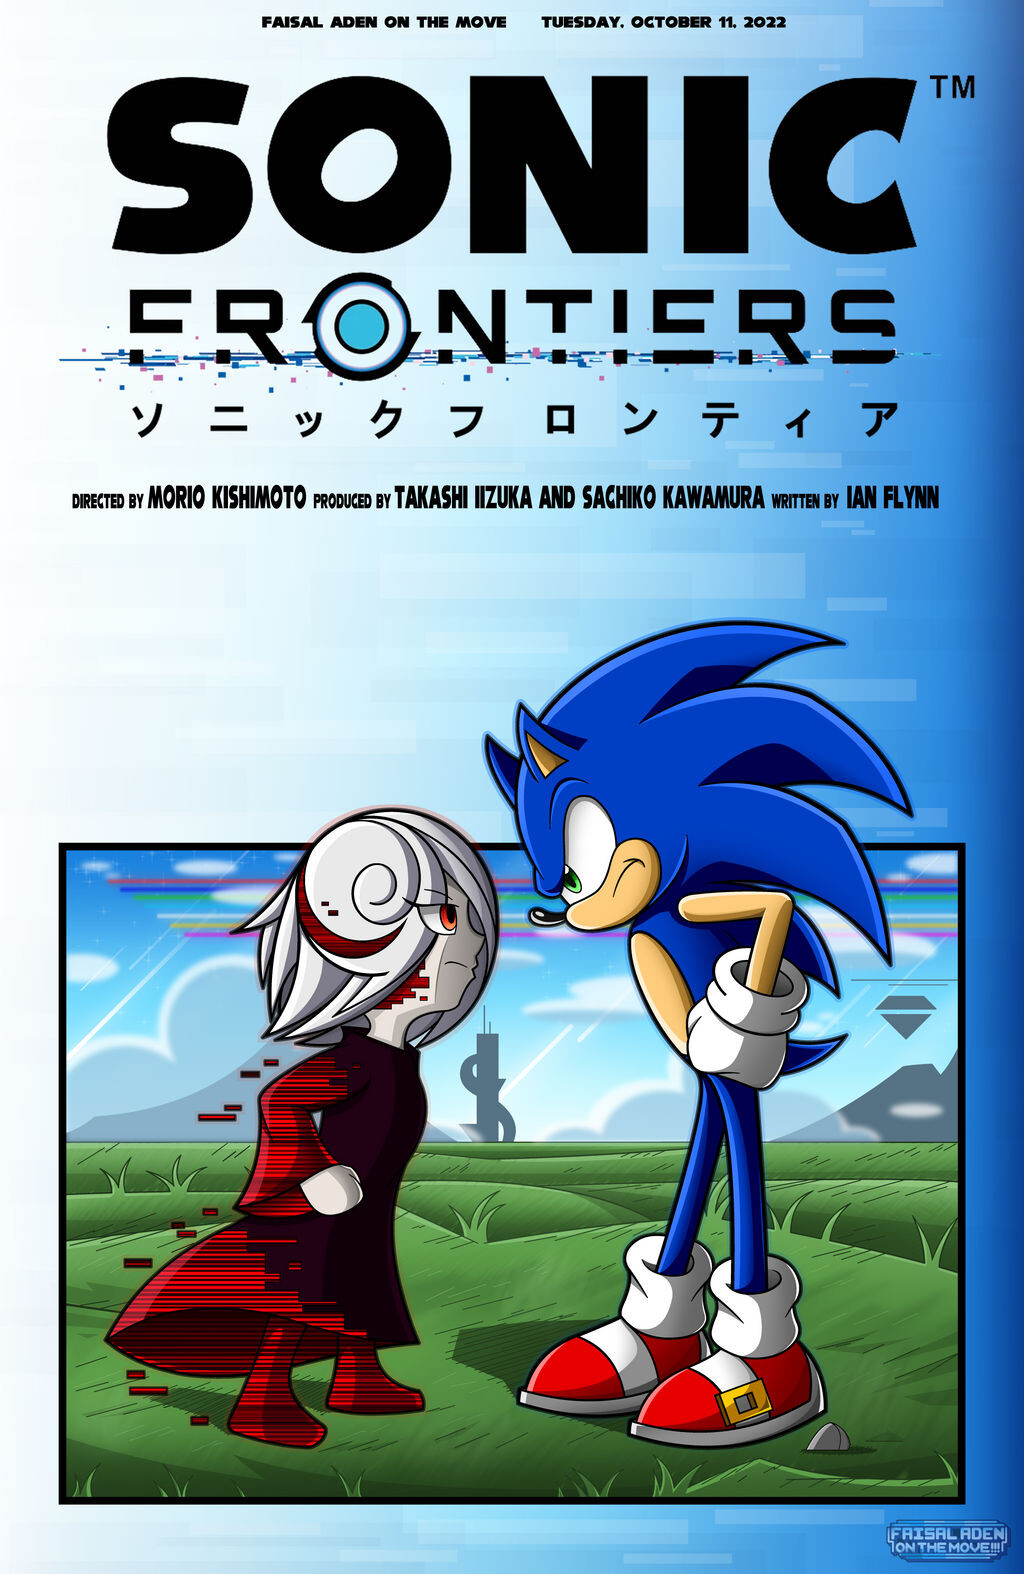 ArtStation - Sonic Frontiers